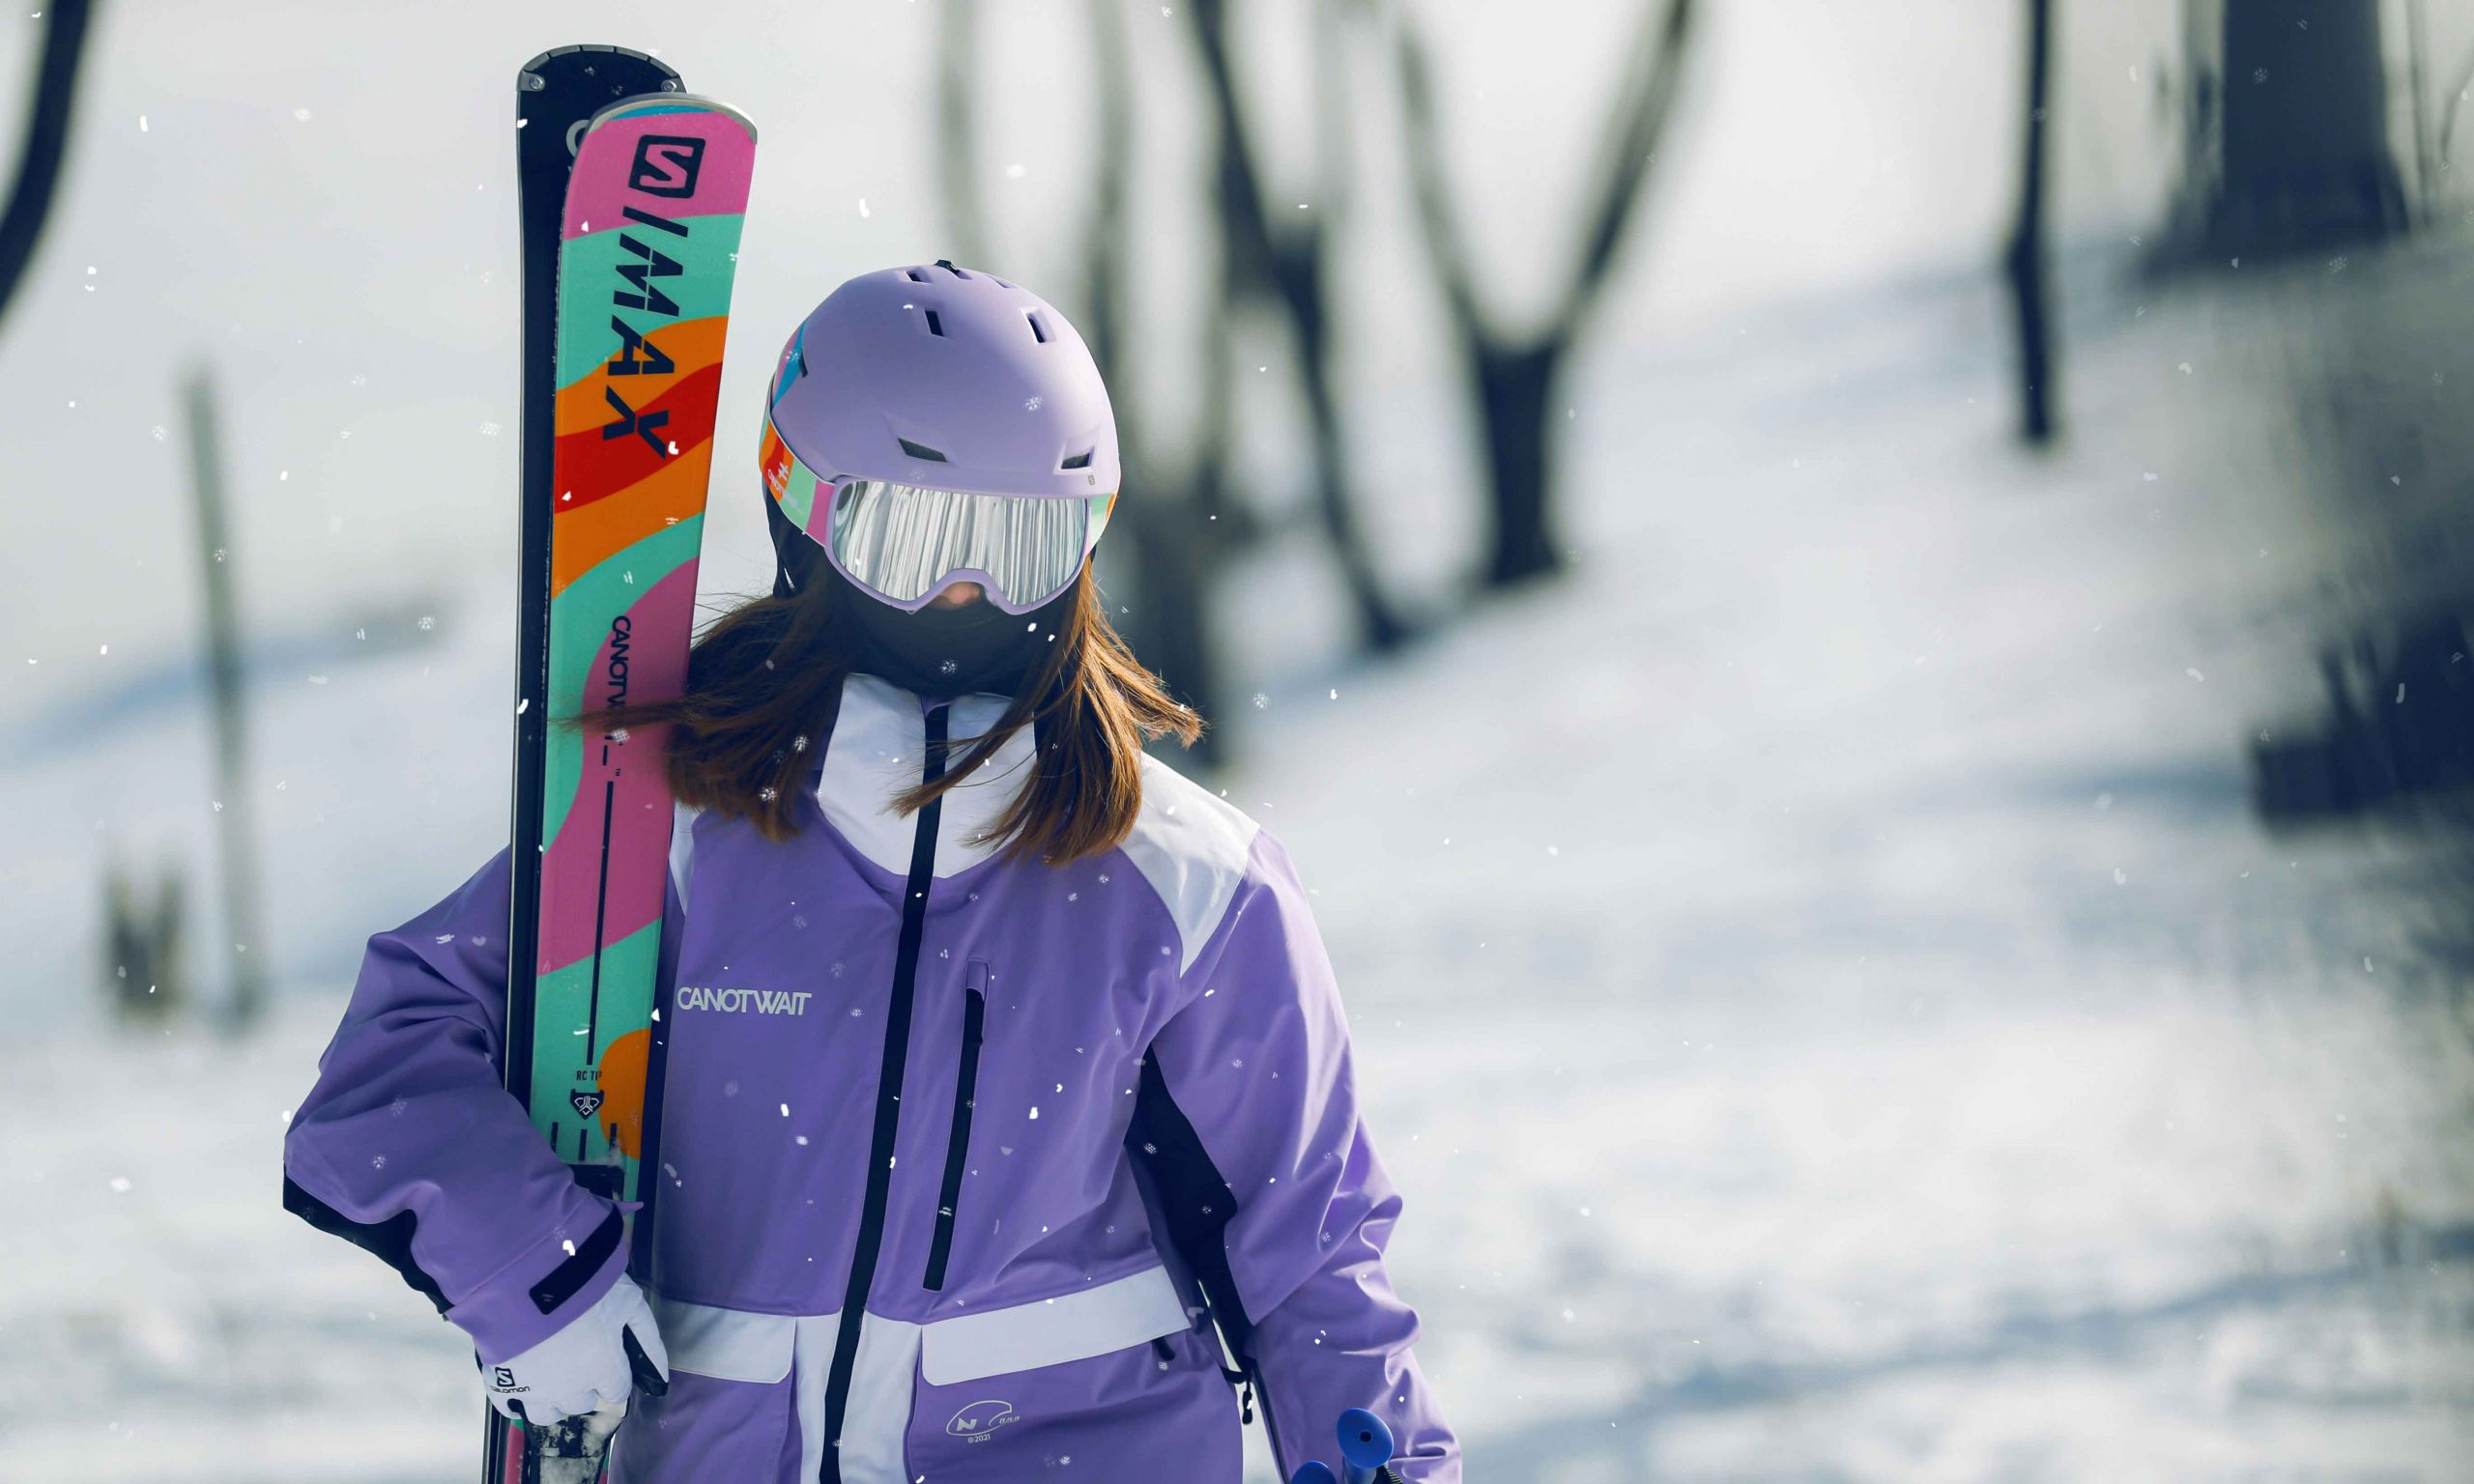 CANOTWAIT_ 携 SALOMON  联名亮相，发布 2021 秋冬限量滑雪系列